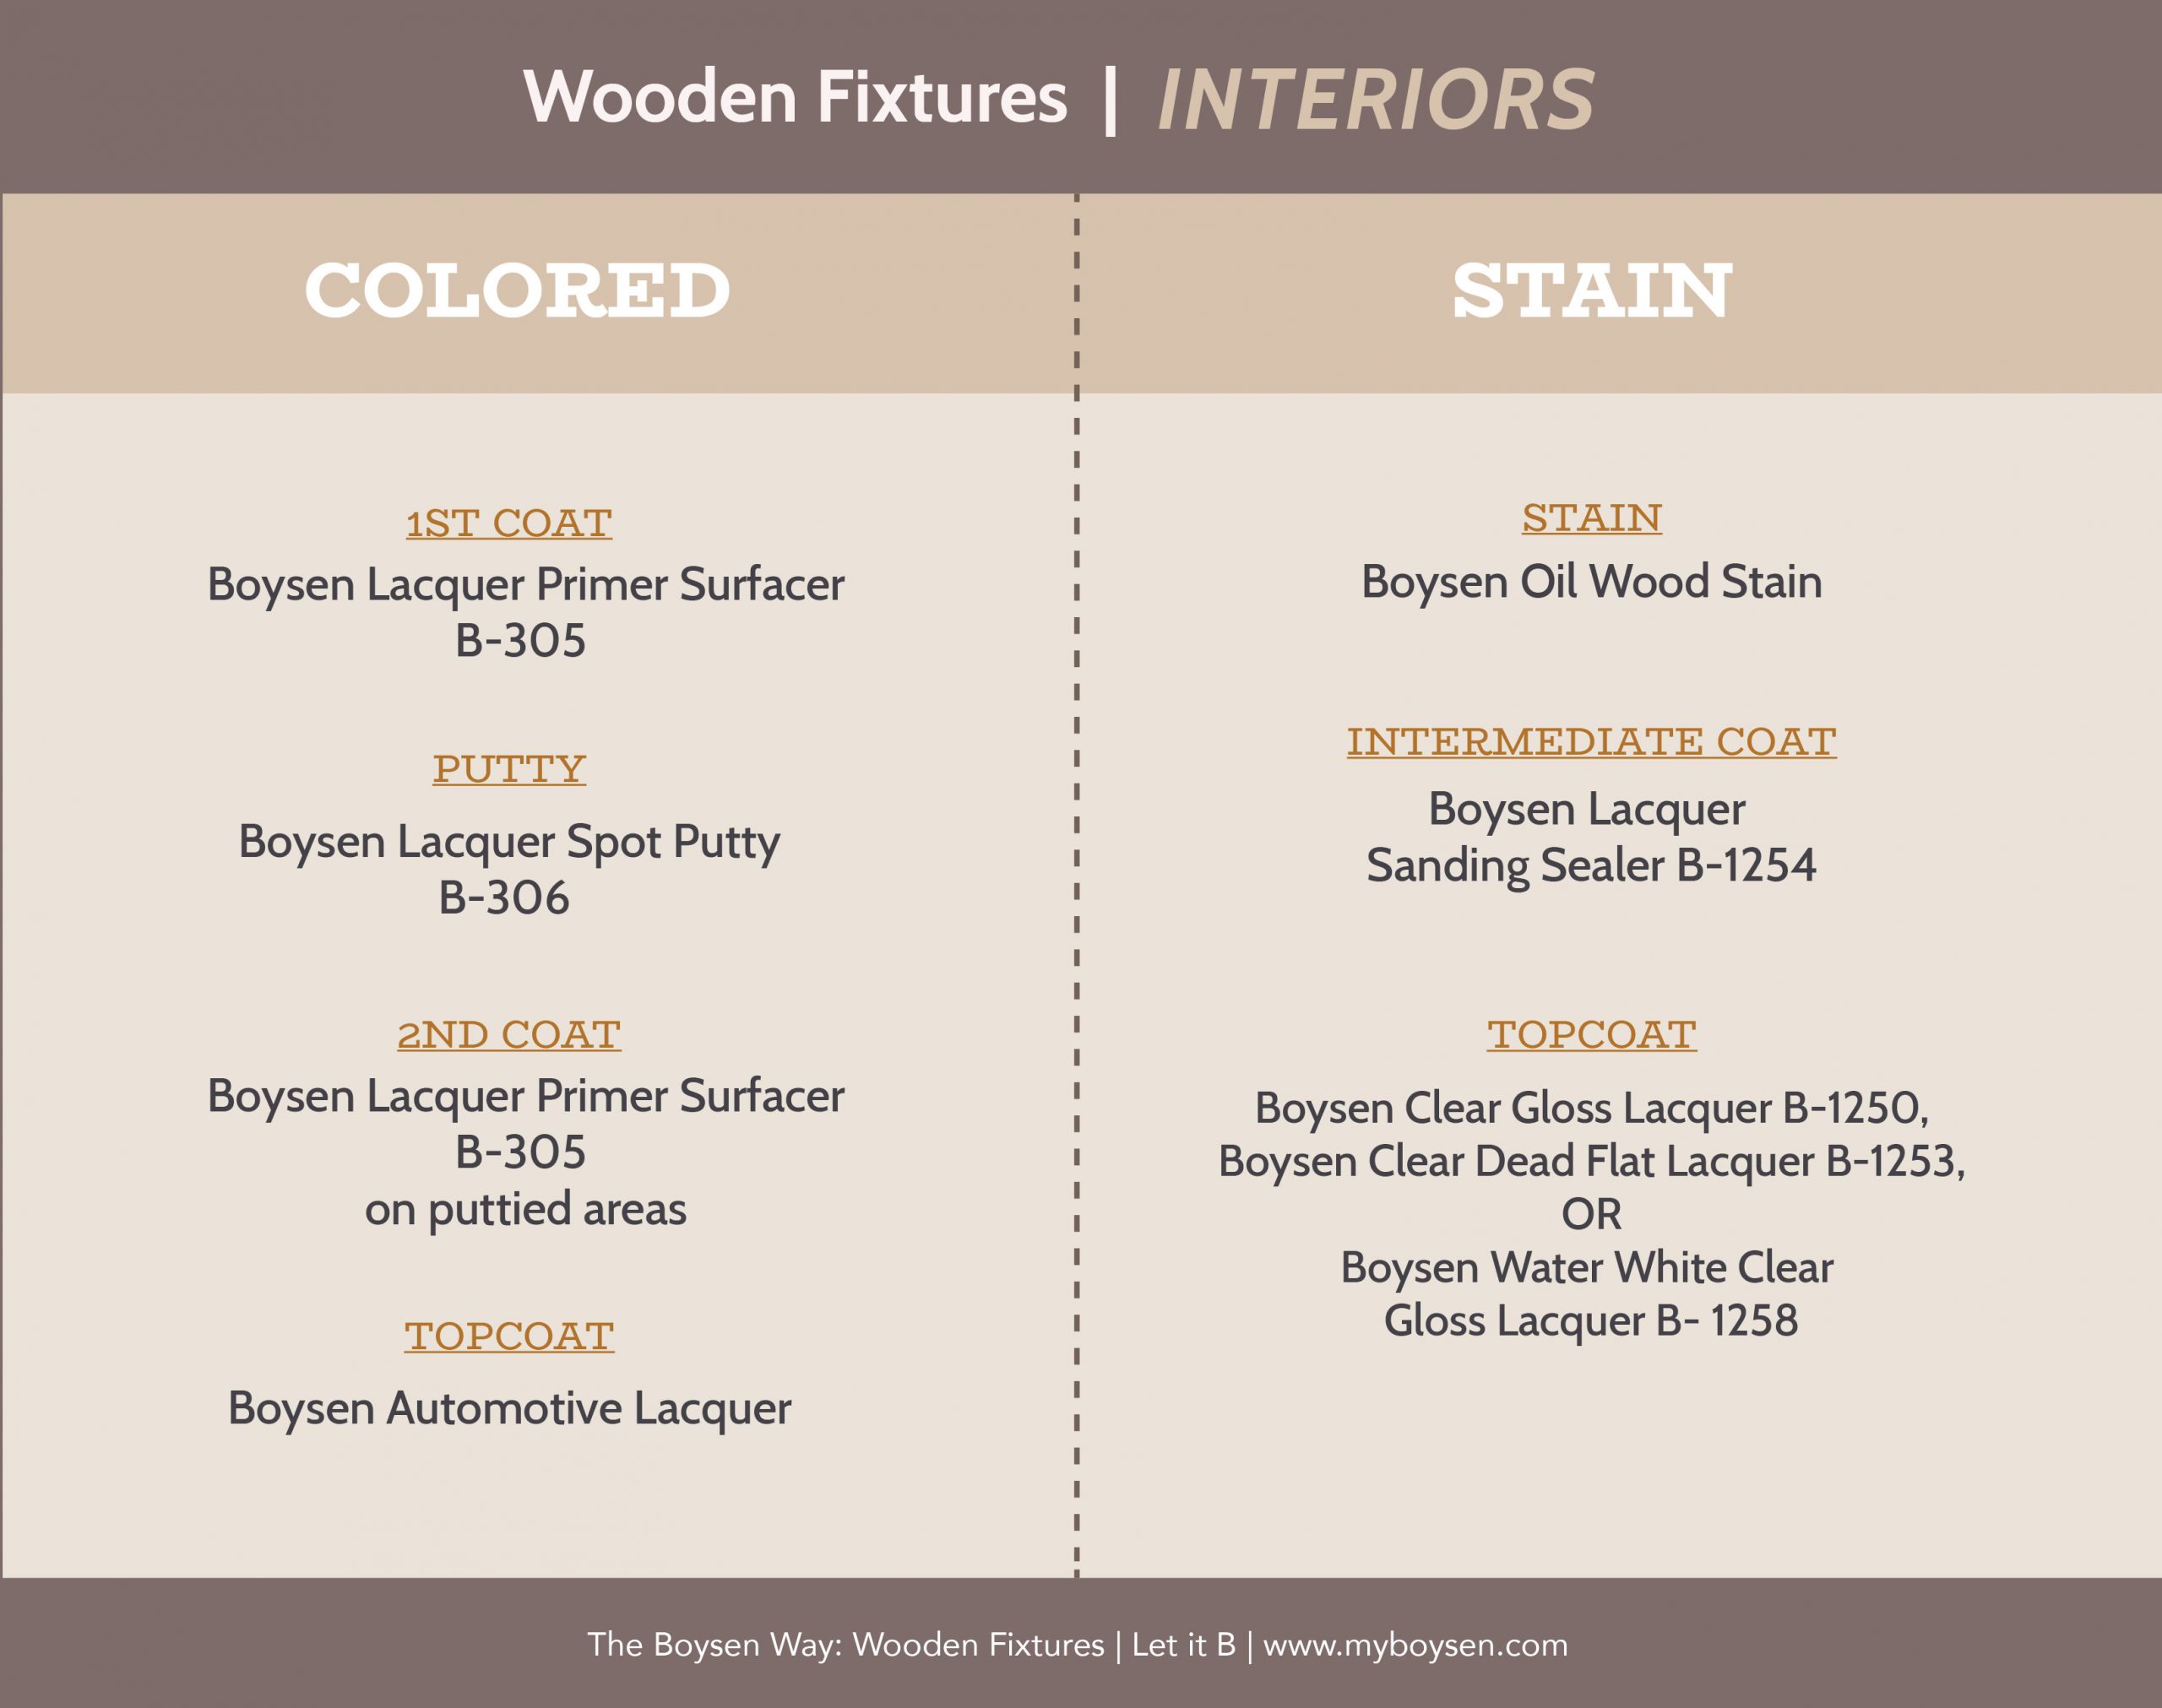 The Boysen Way: Wooden Fixtures | MyBoysen